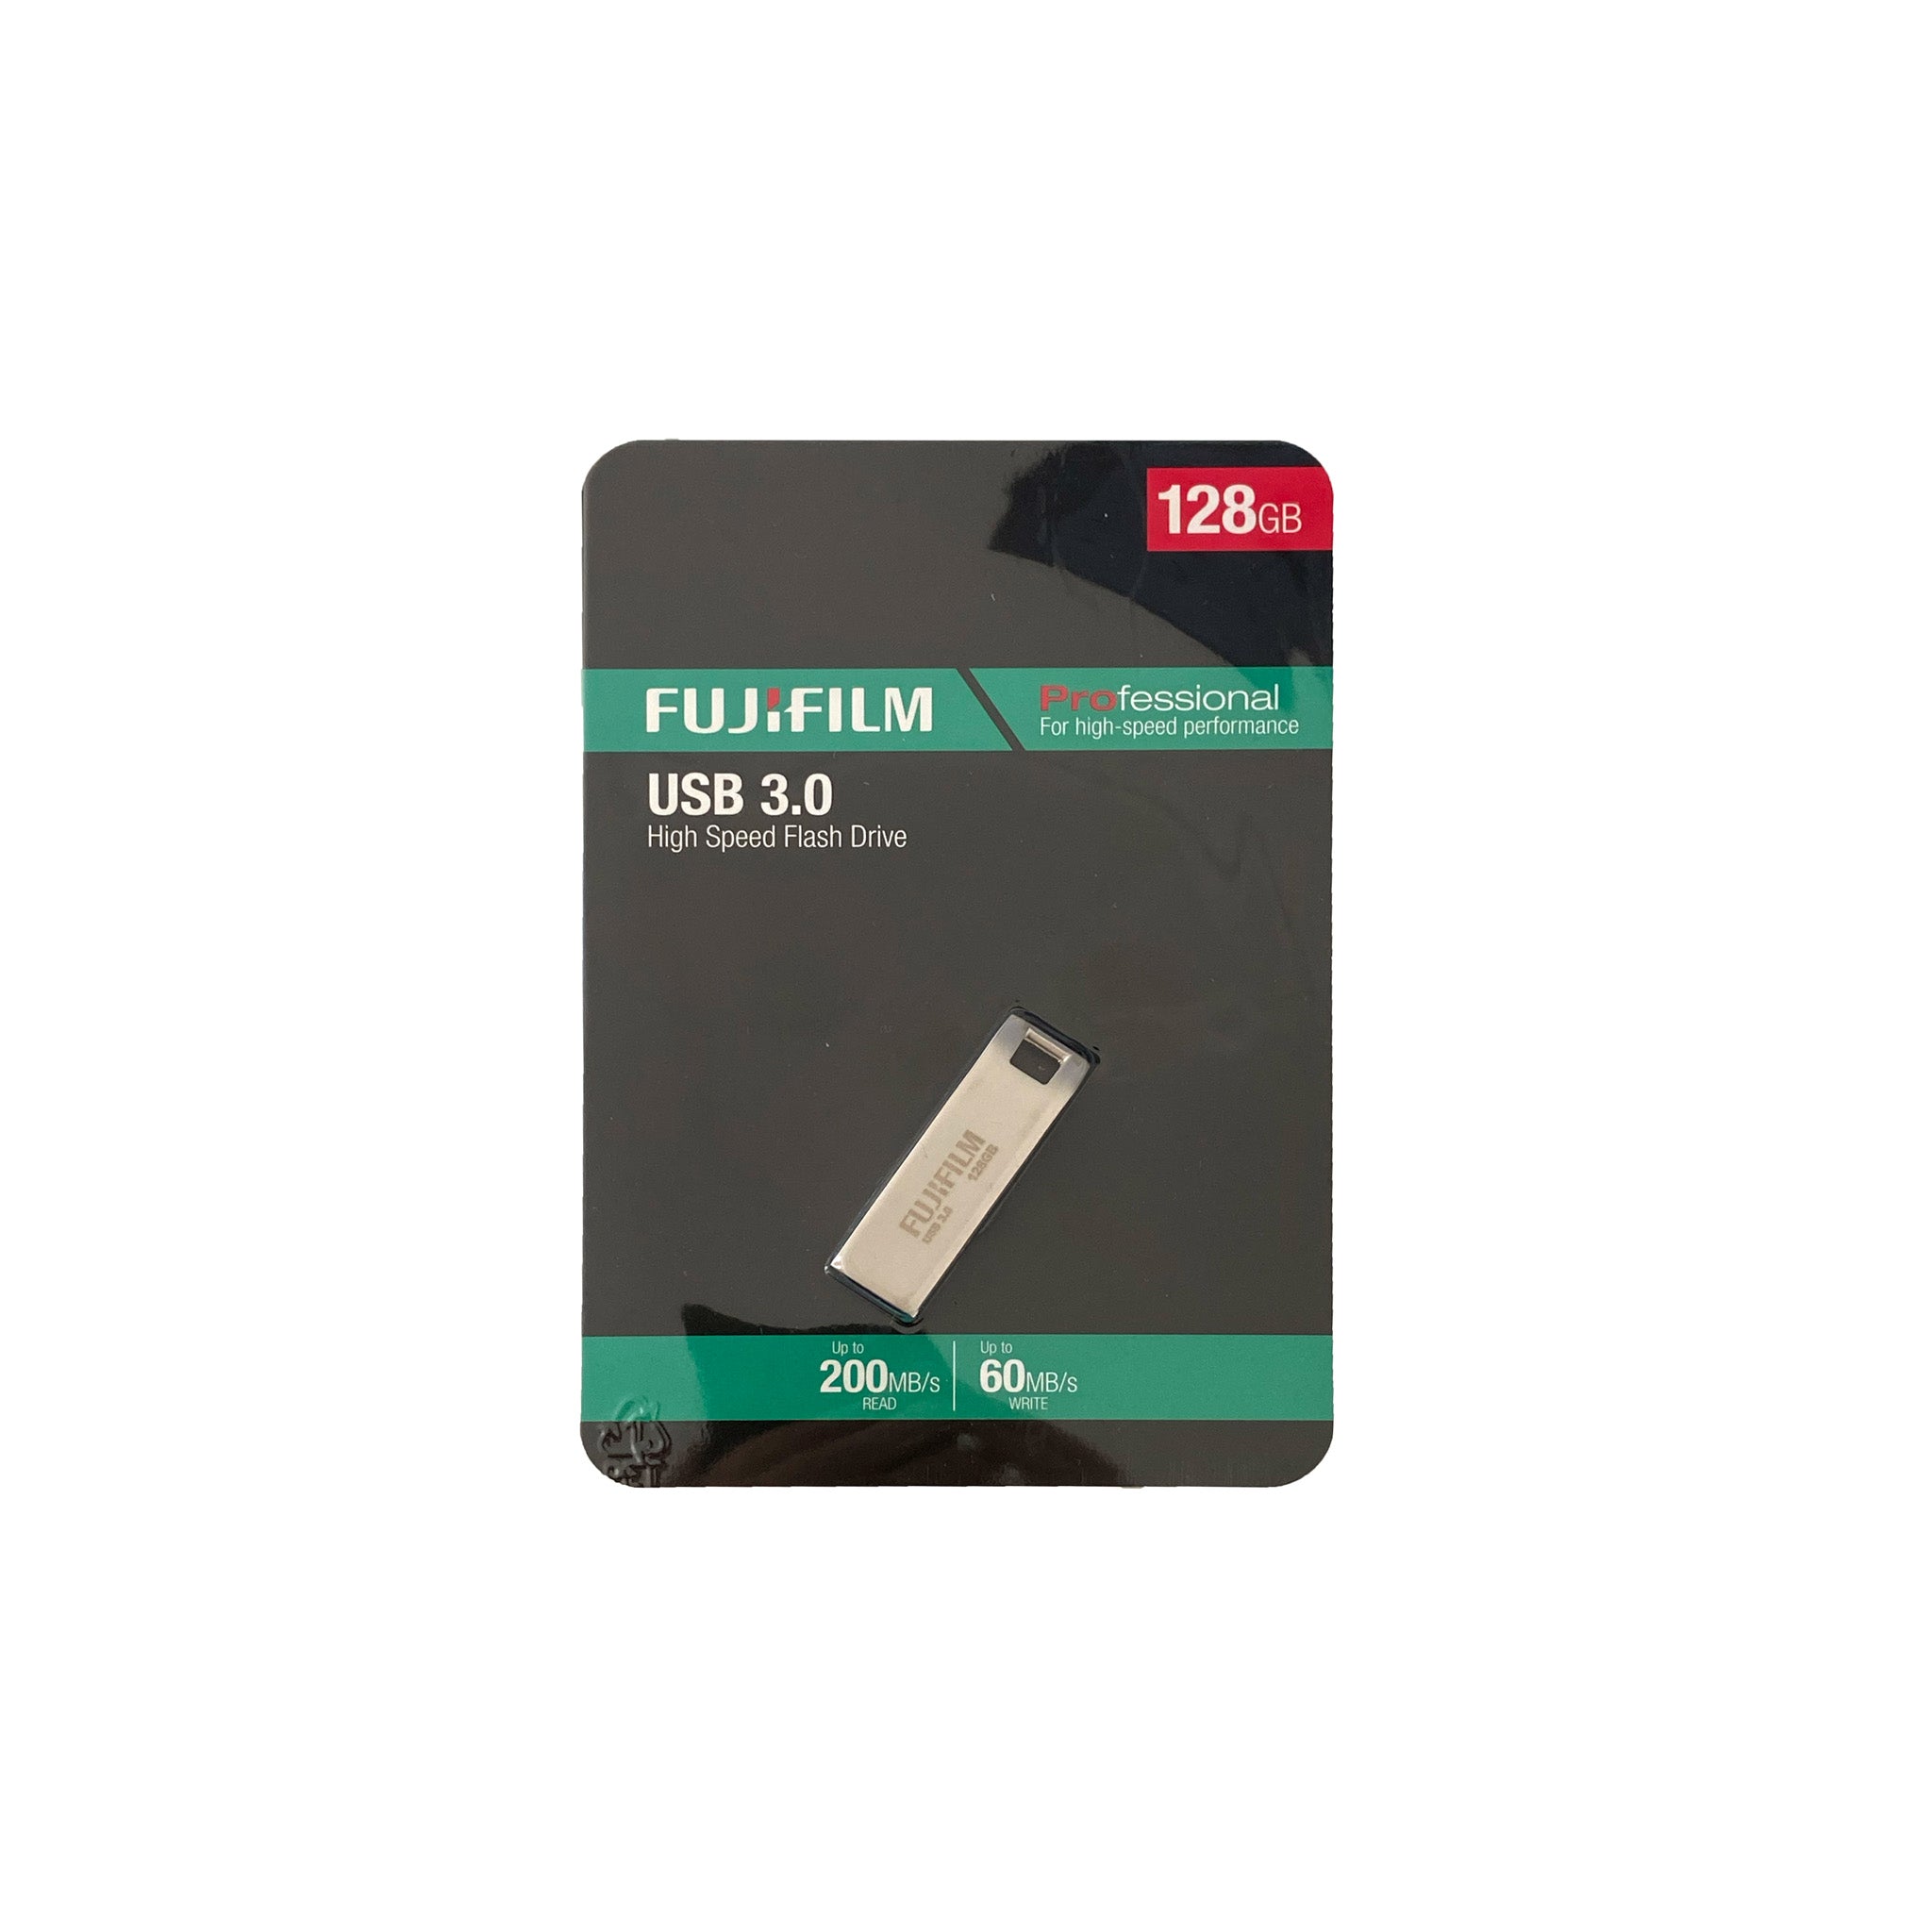 Fujifilm USB 3 Professional USB Flash Drive